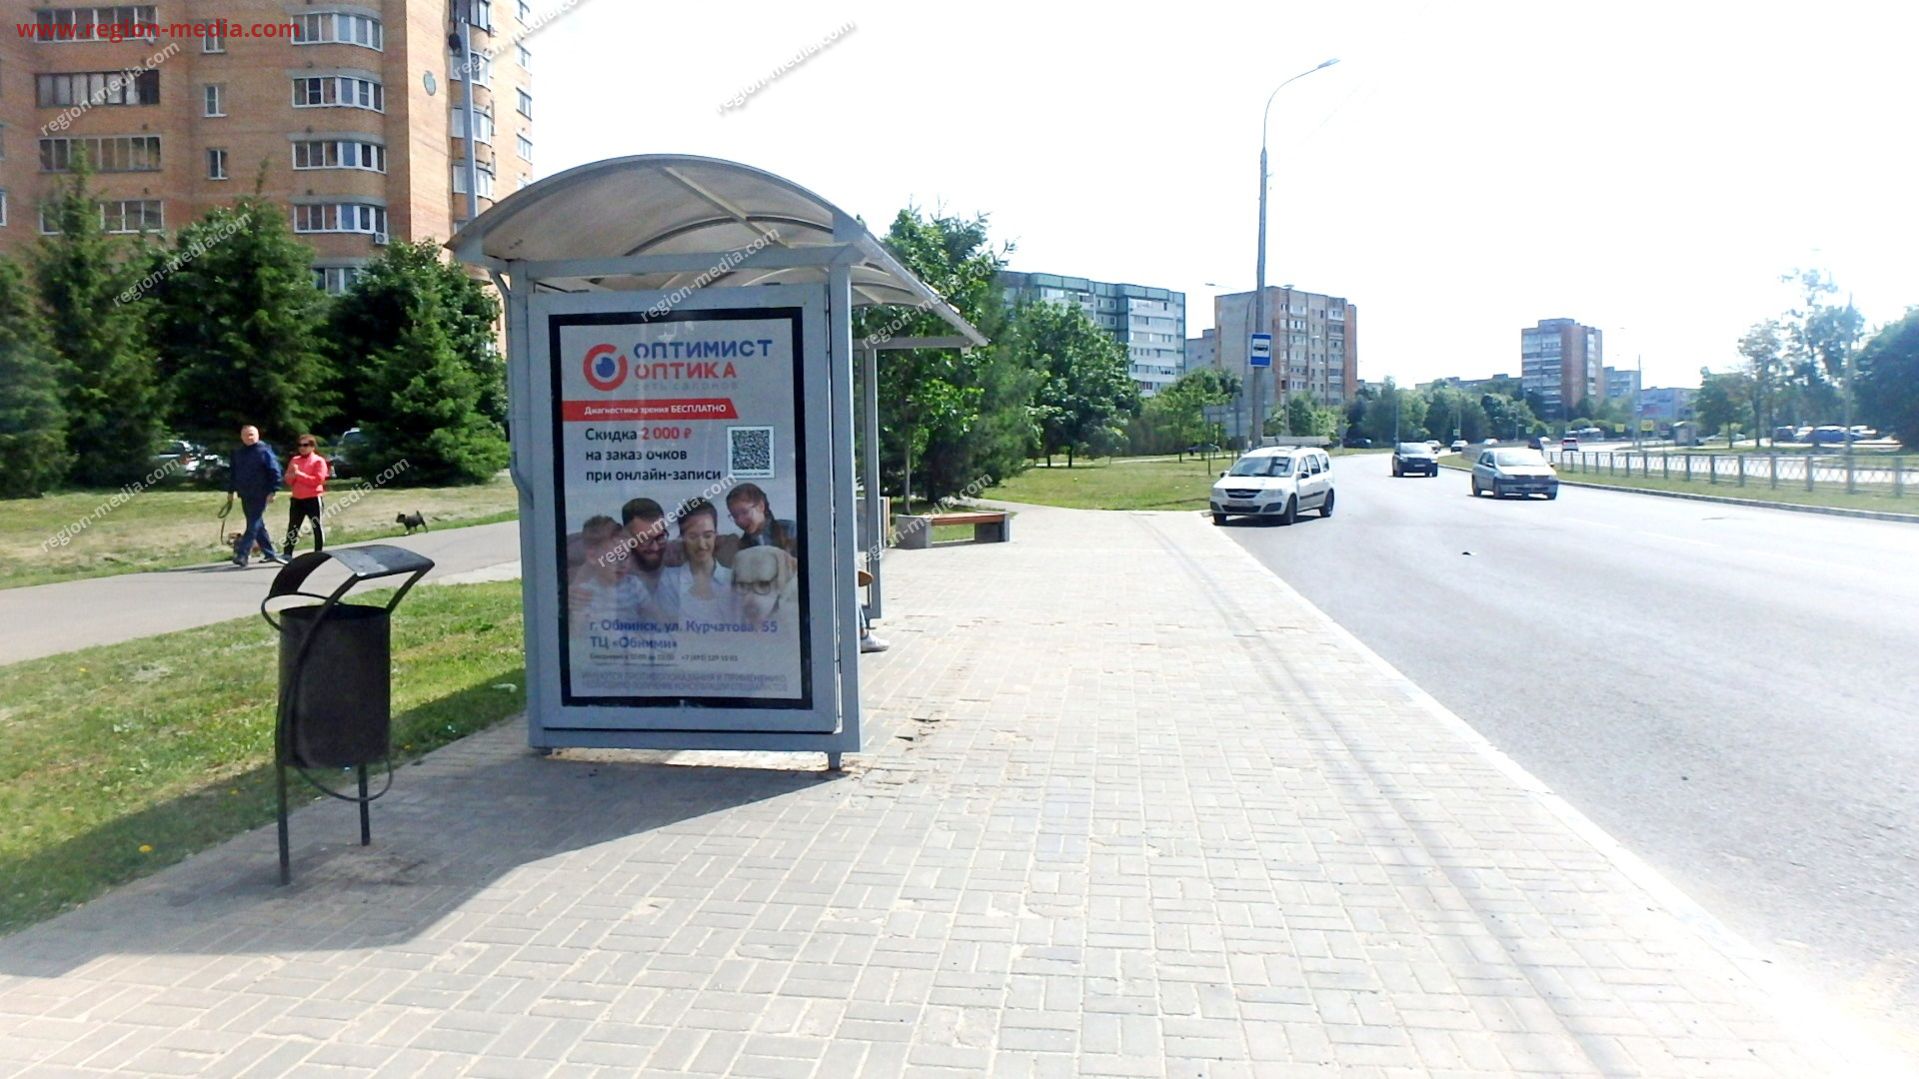 Размещение рекламы на остановках нашего клиента "Оптимист Оптика" в г. Обнинск